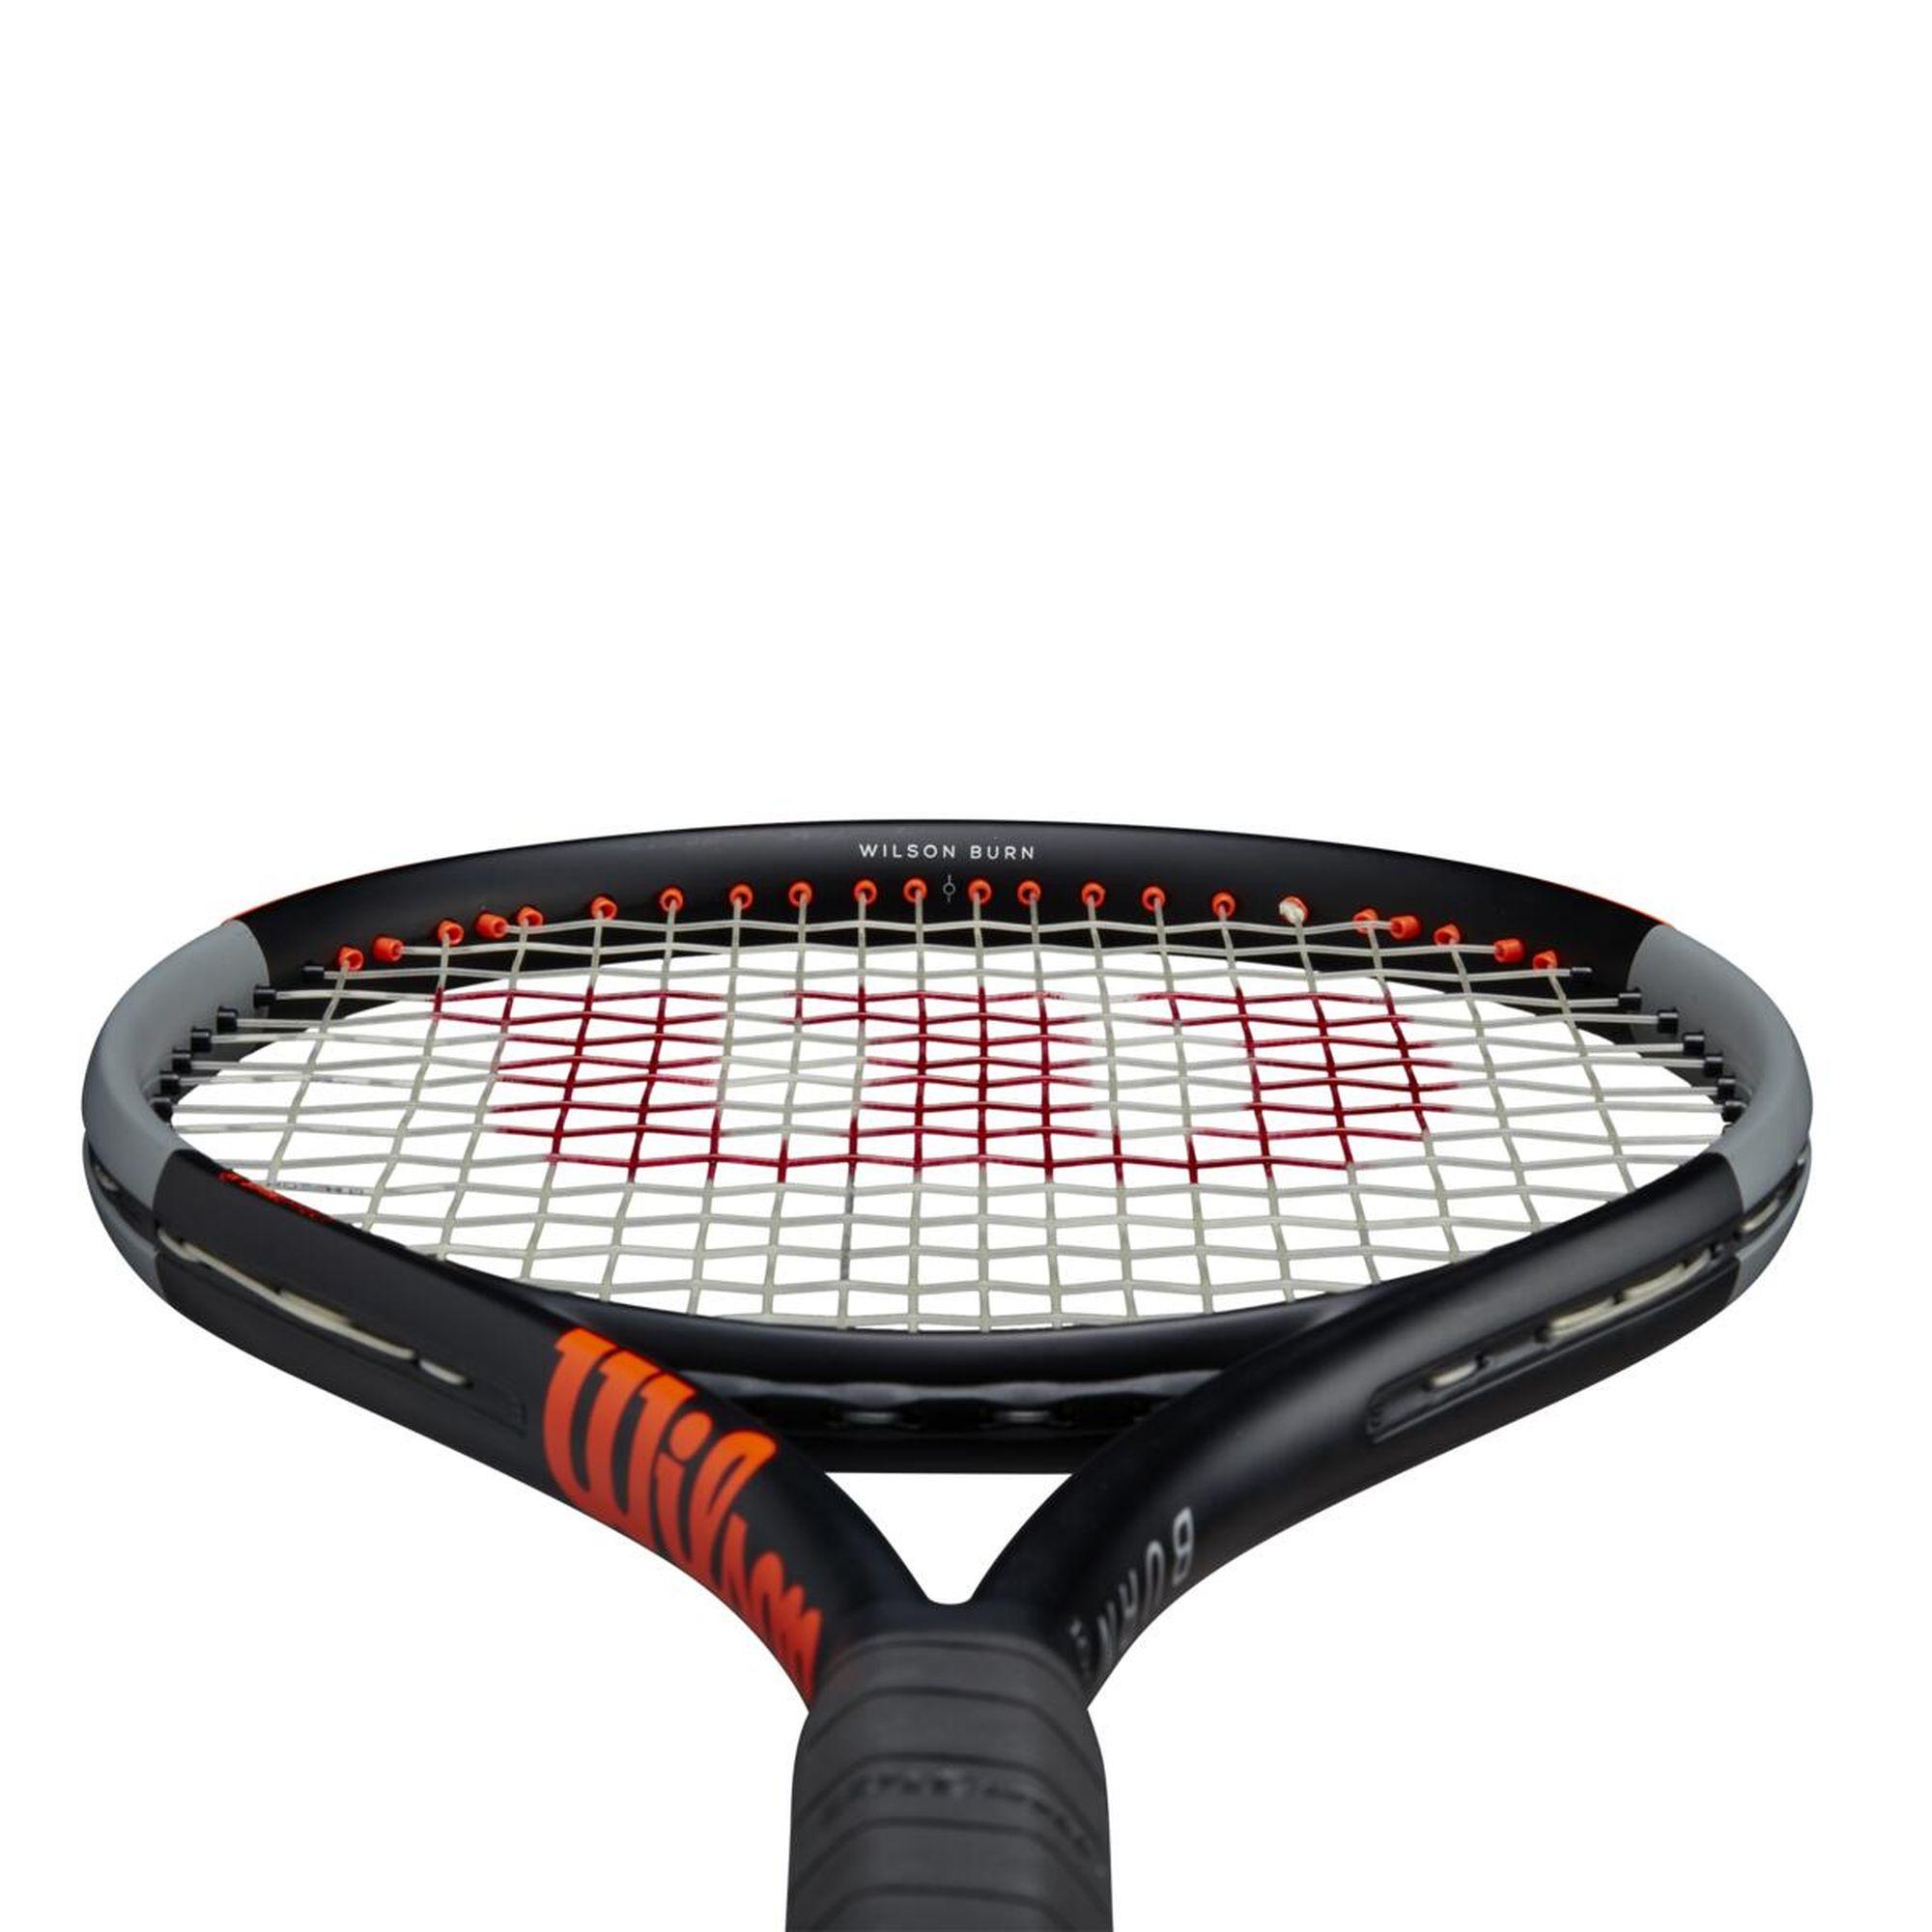 Adult Tennis Racket Burn 100LS V4 280 g - Black/Orange 6/8